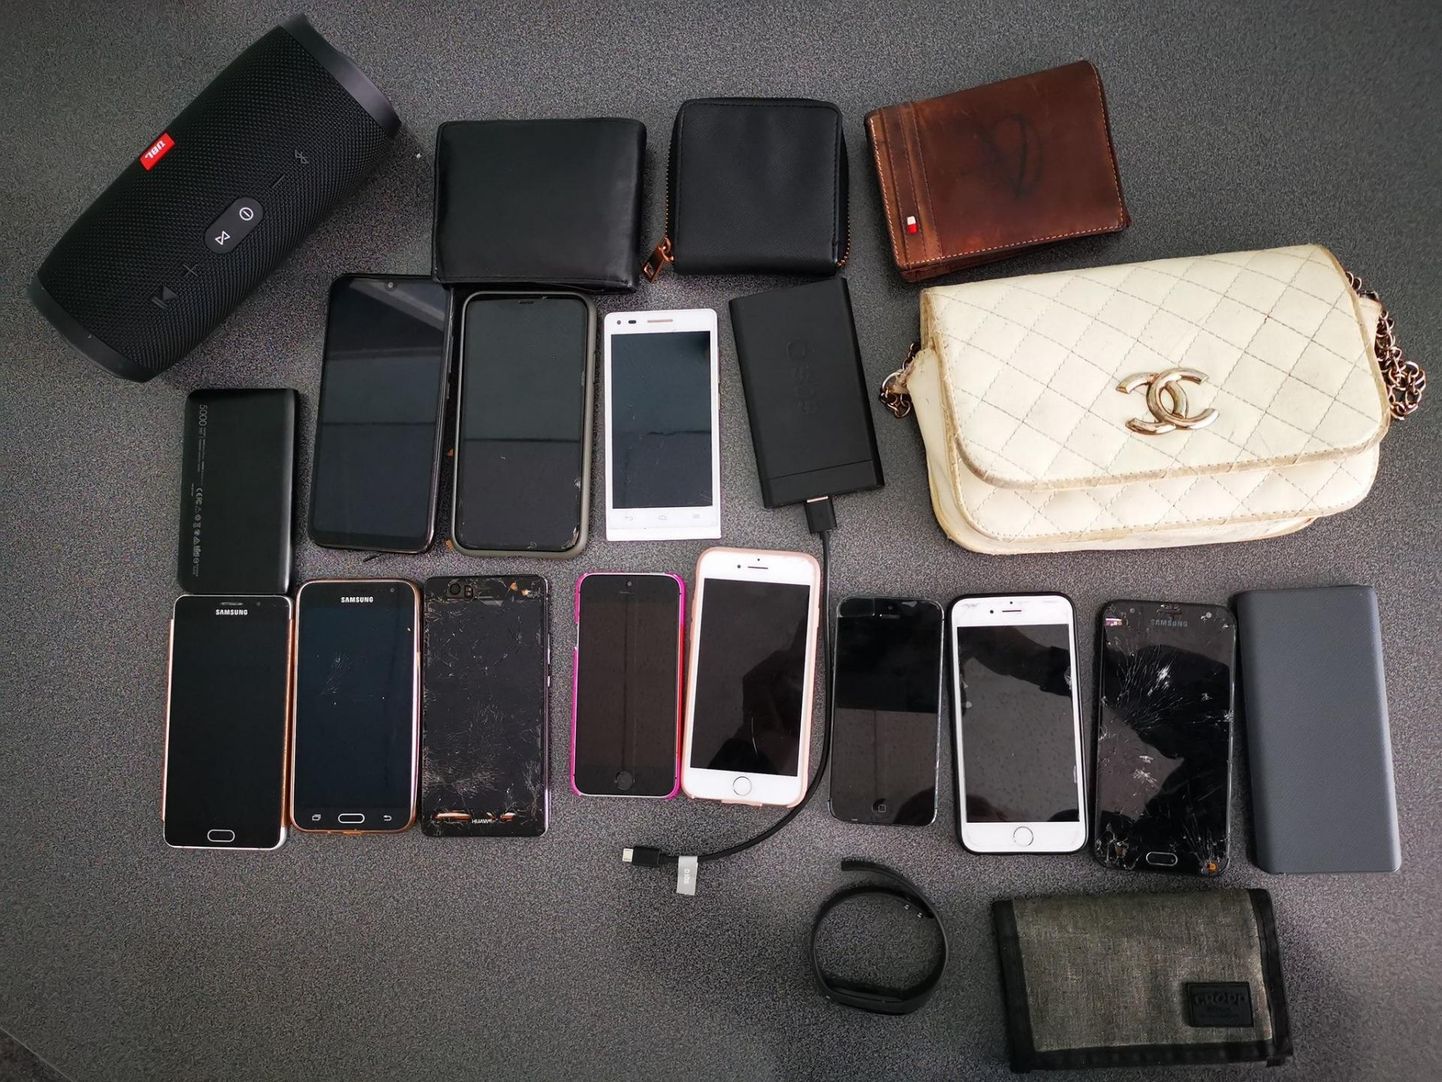 Телефоны и другие вещи, которые теперь ждут владельцев в отделении полиции.